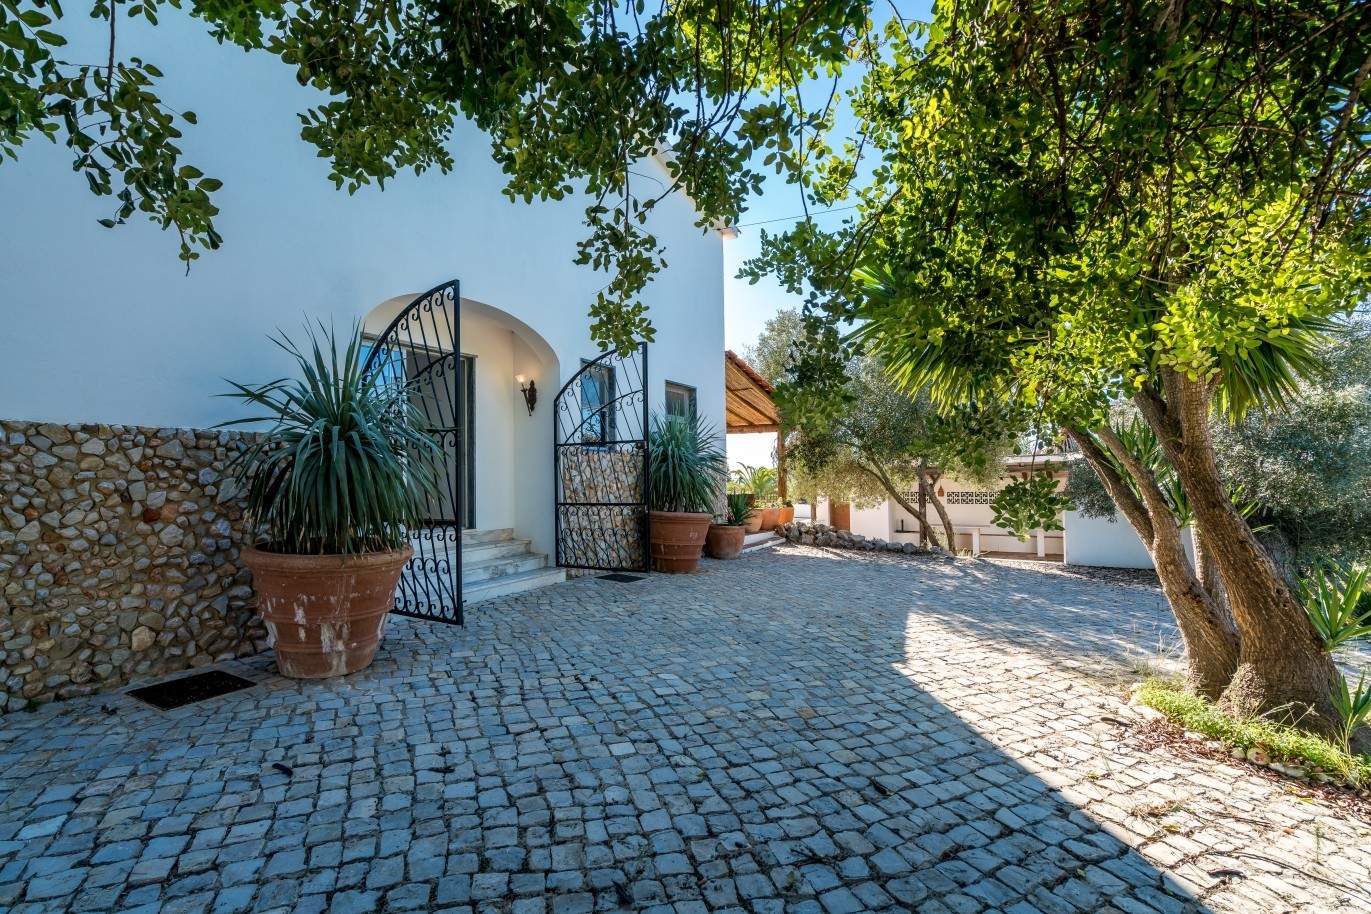 Piso en venta, piscina y tenis, Sta Bárbara de Nexe, Algarve, Portugal_70540